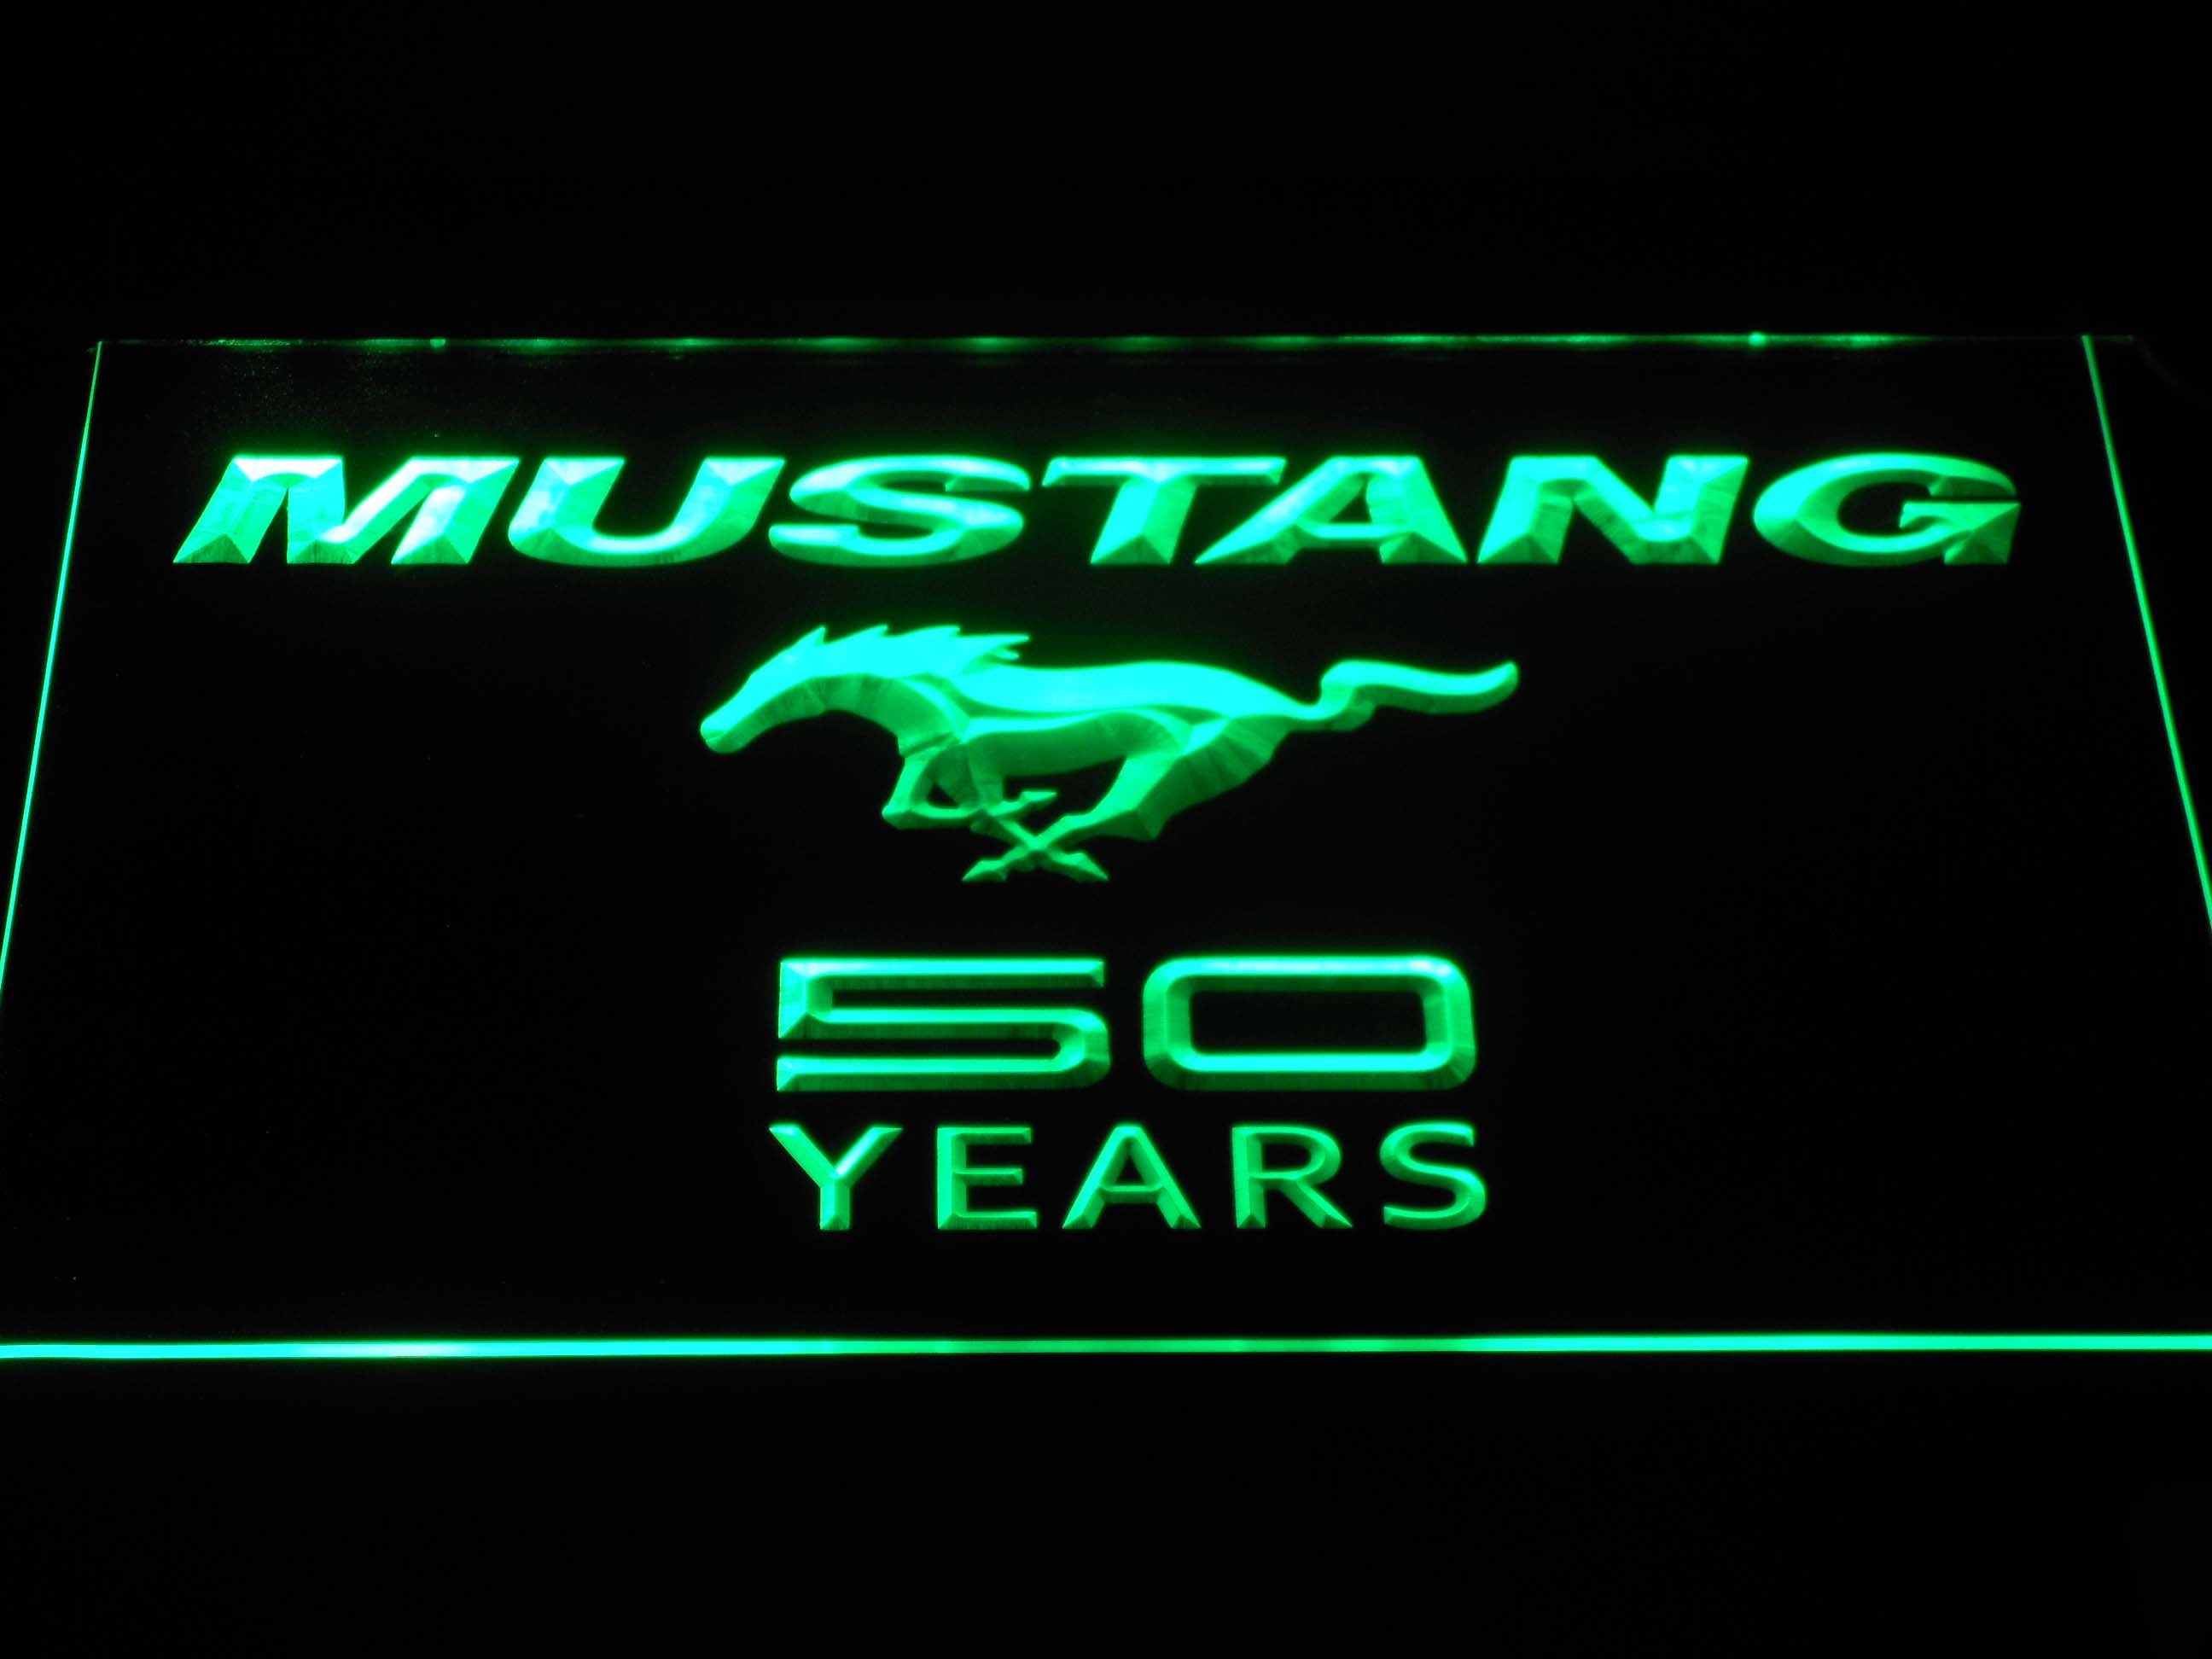 フォードマスタング50年ワードマークネオンライトLEDサイン